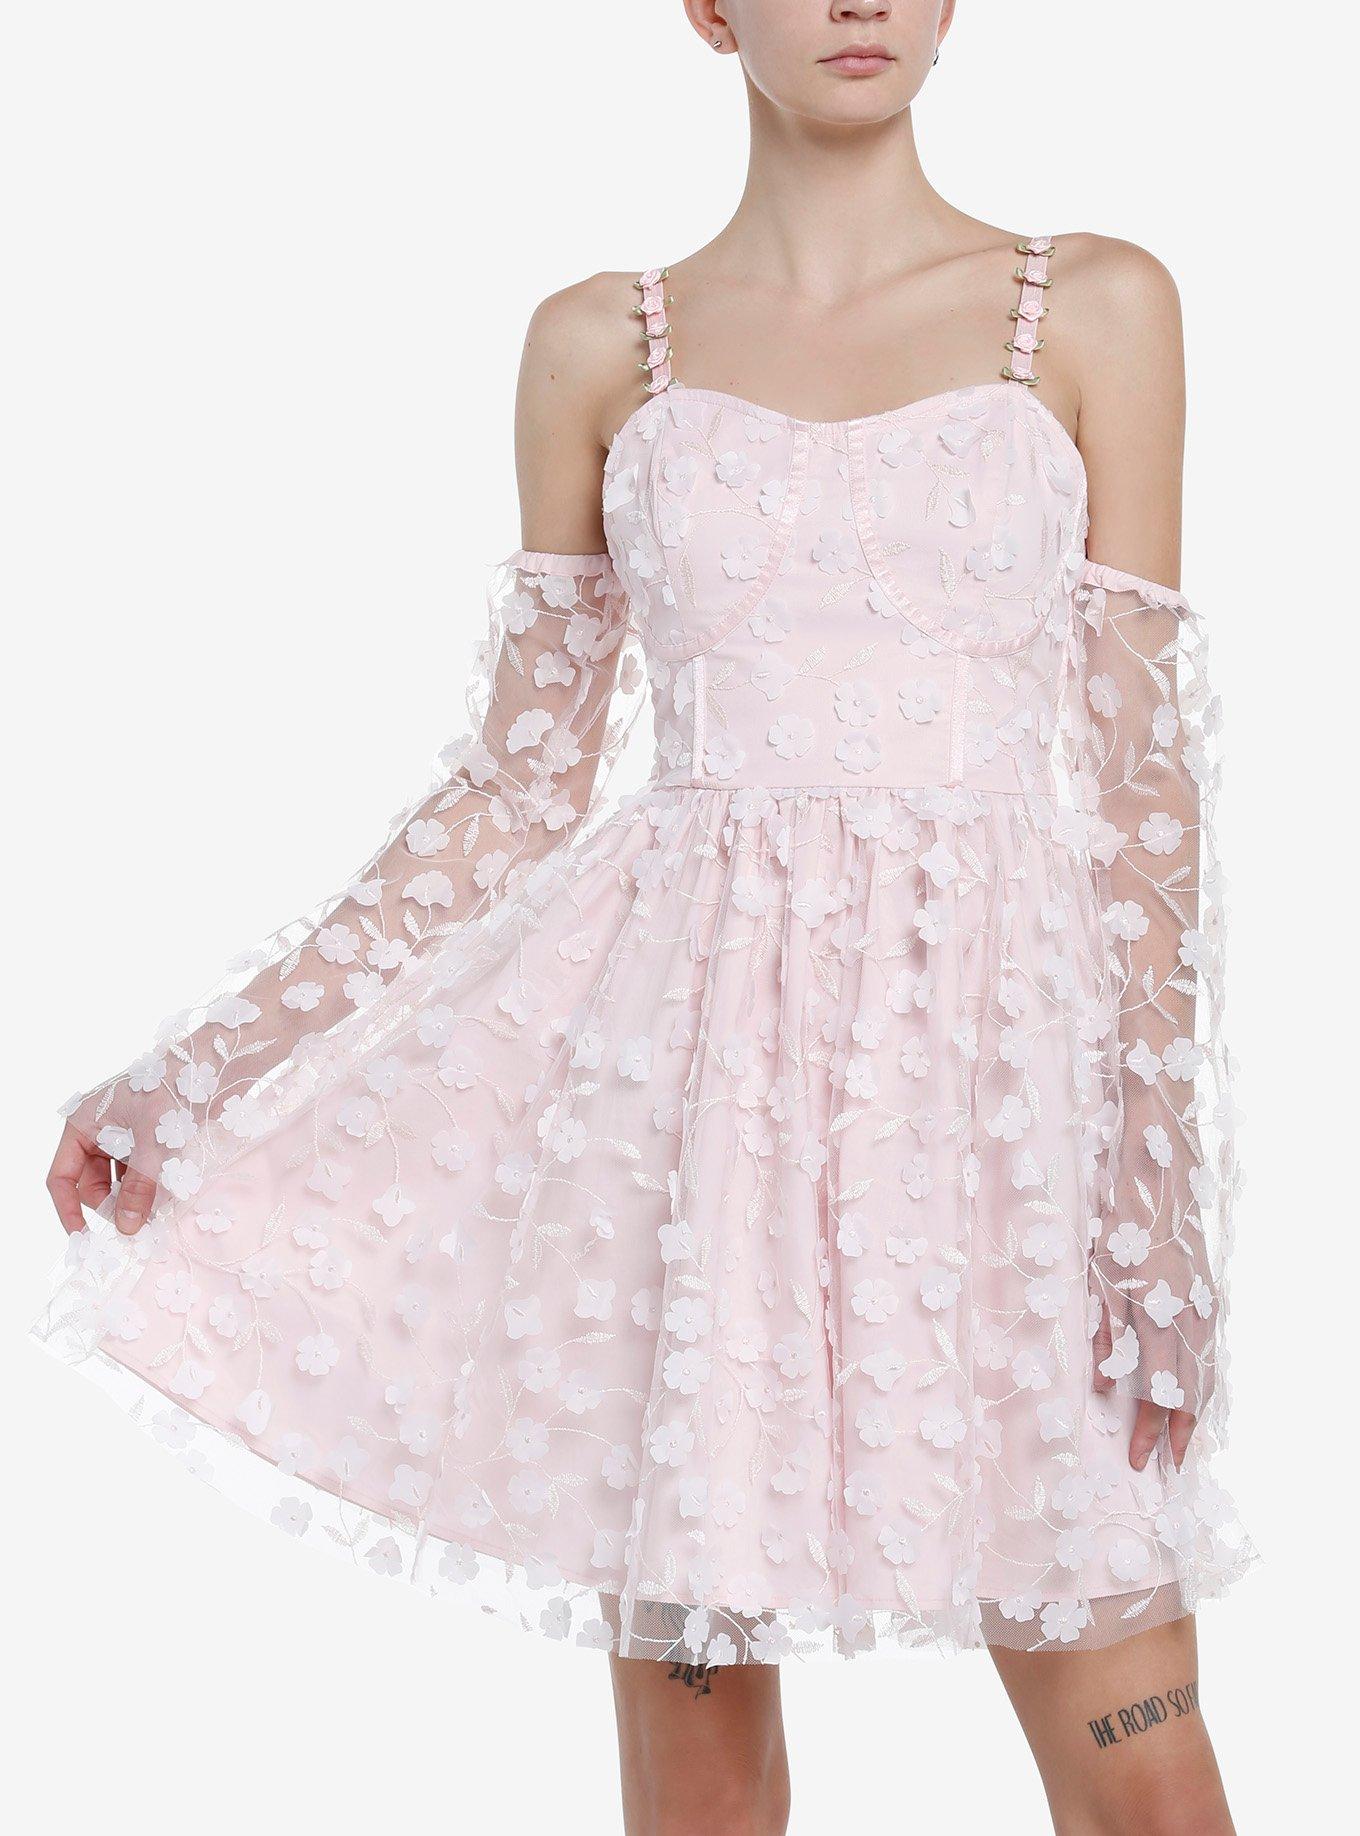 Thorn & Fable Pink Rosette Cold Shoulder Dress, PINK, hi-res